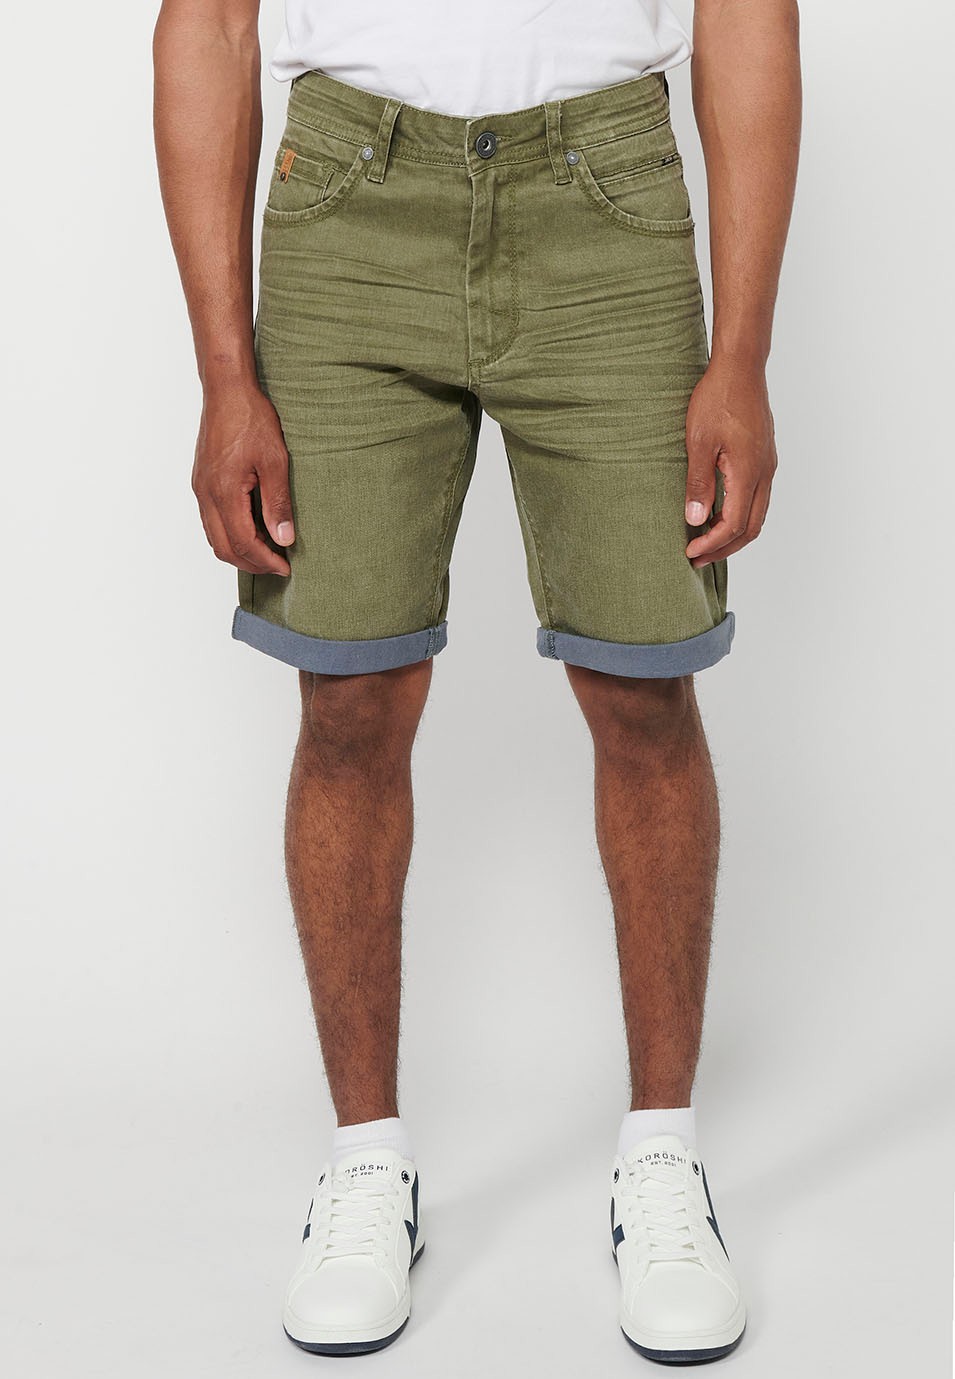 Jeans-Bermudashorts mit Umschlag, Frontverschluss mit Reißverschluss und Knopf, fünf Taschen und einer Tasche, Farbe Oliv für Herren 4